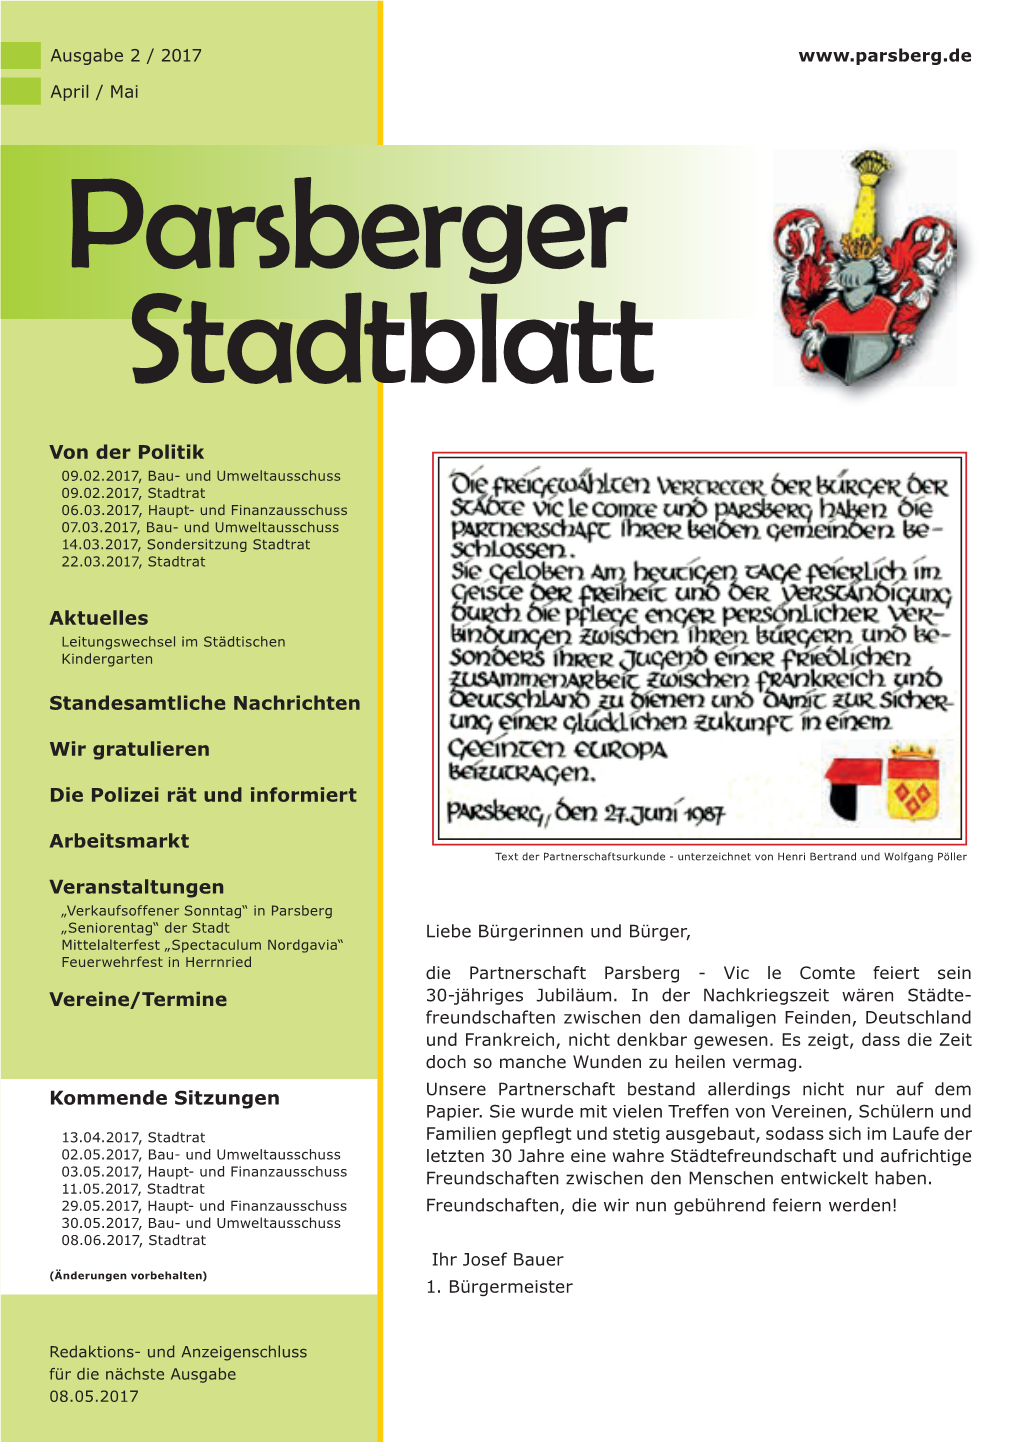 Stadtblatt 022017.Indd